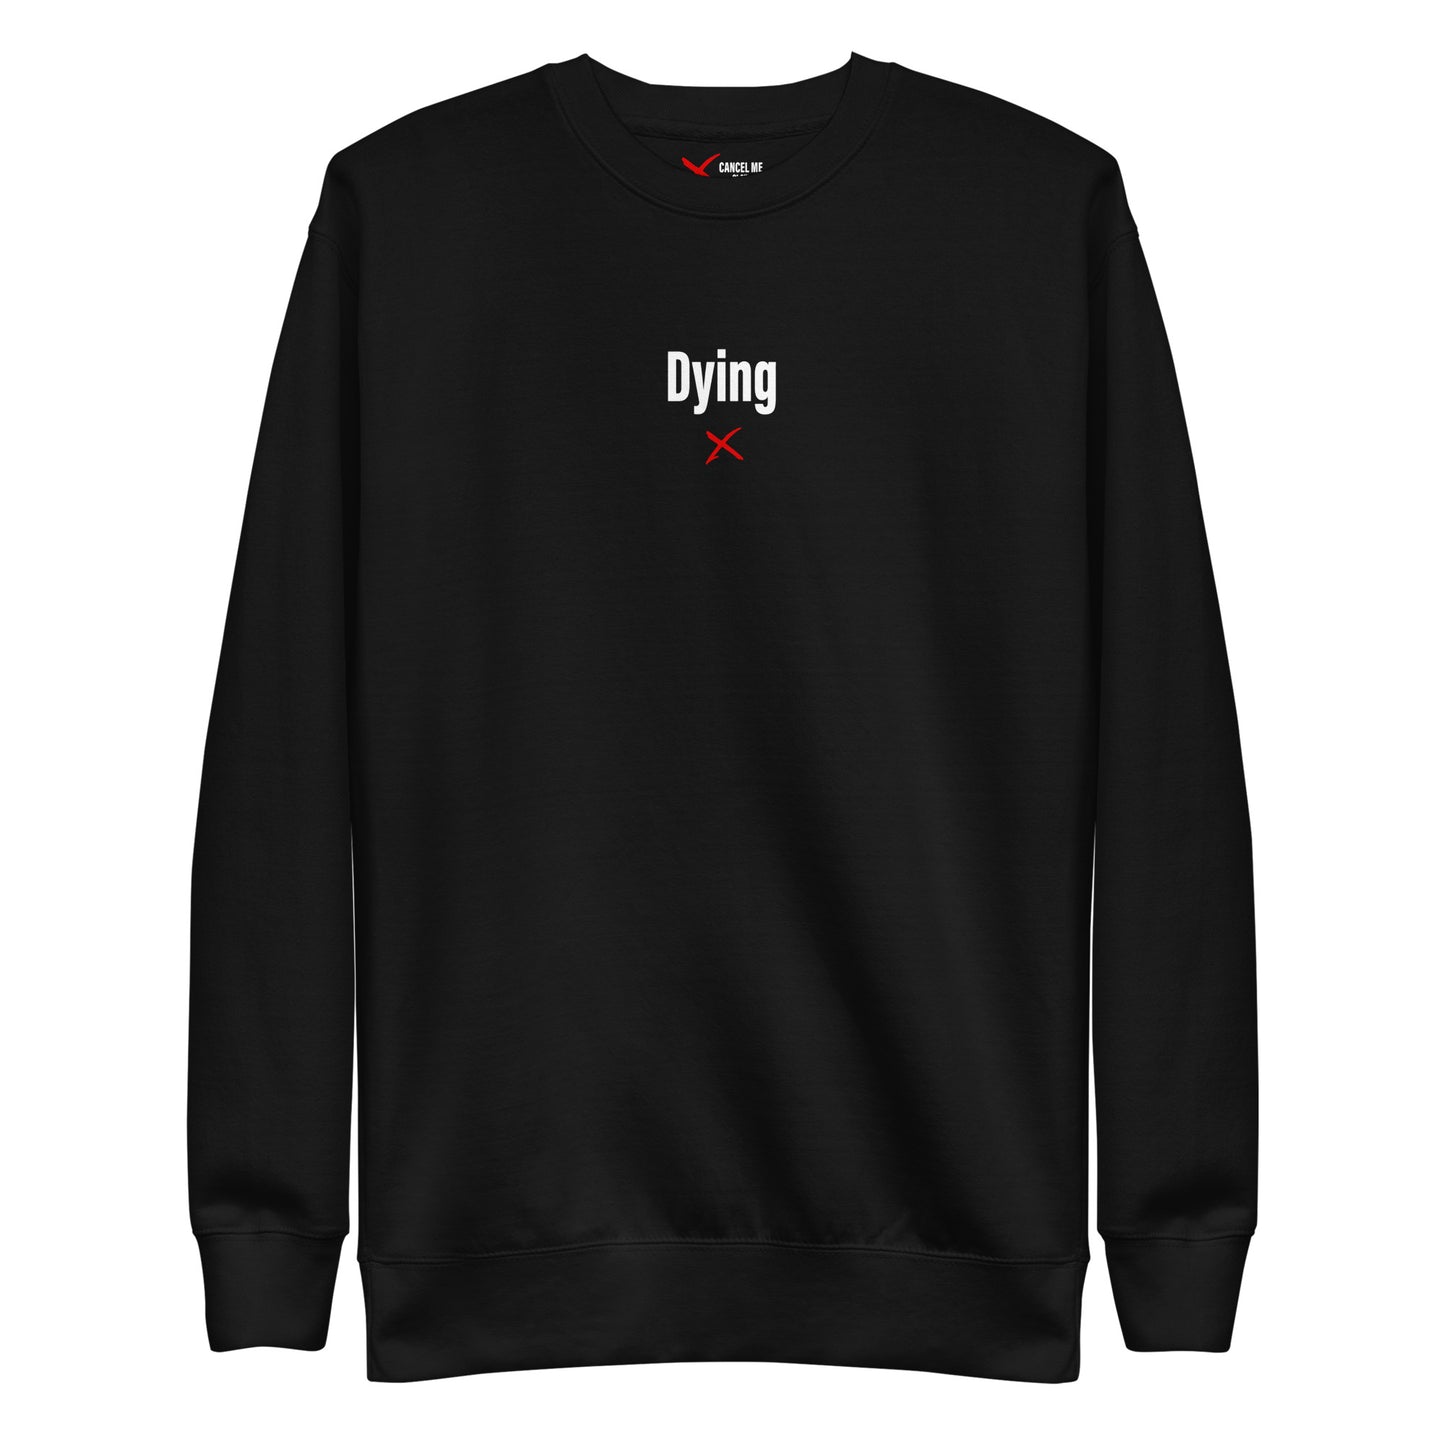 Dying - Sweatshirt